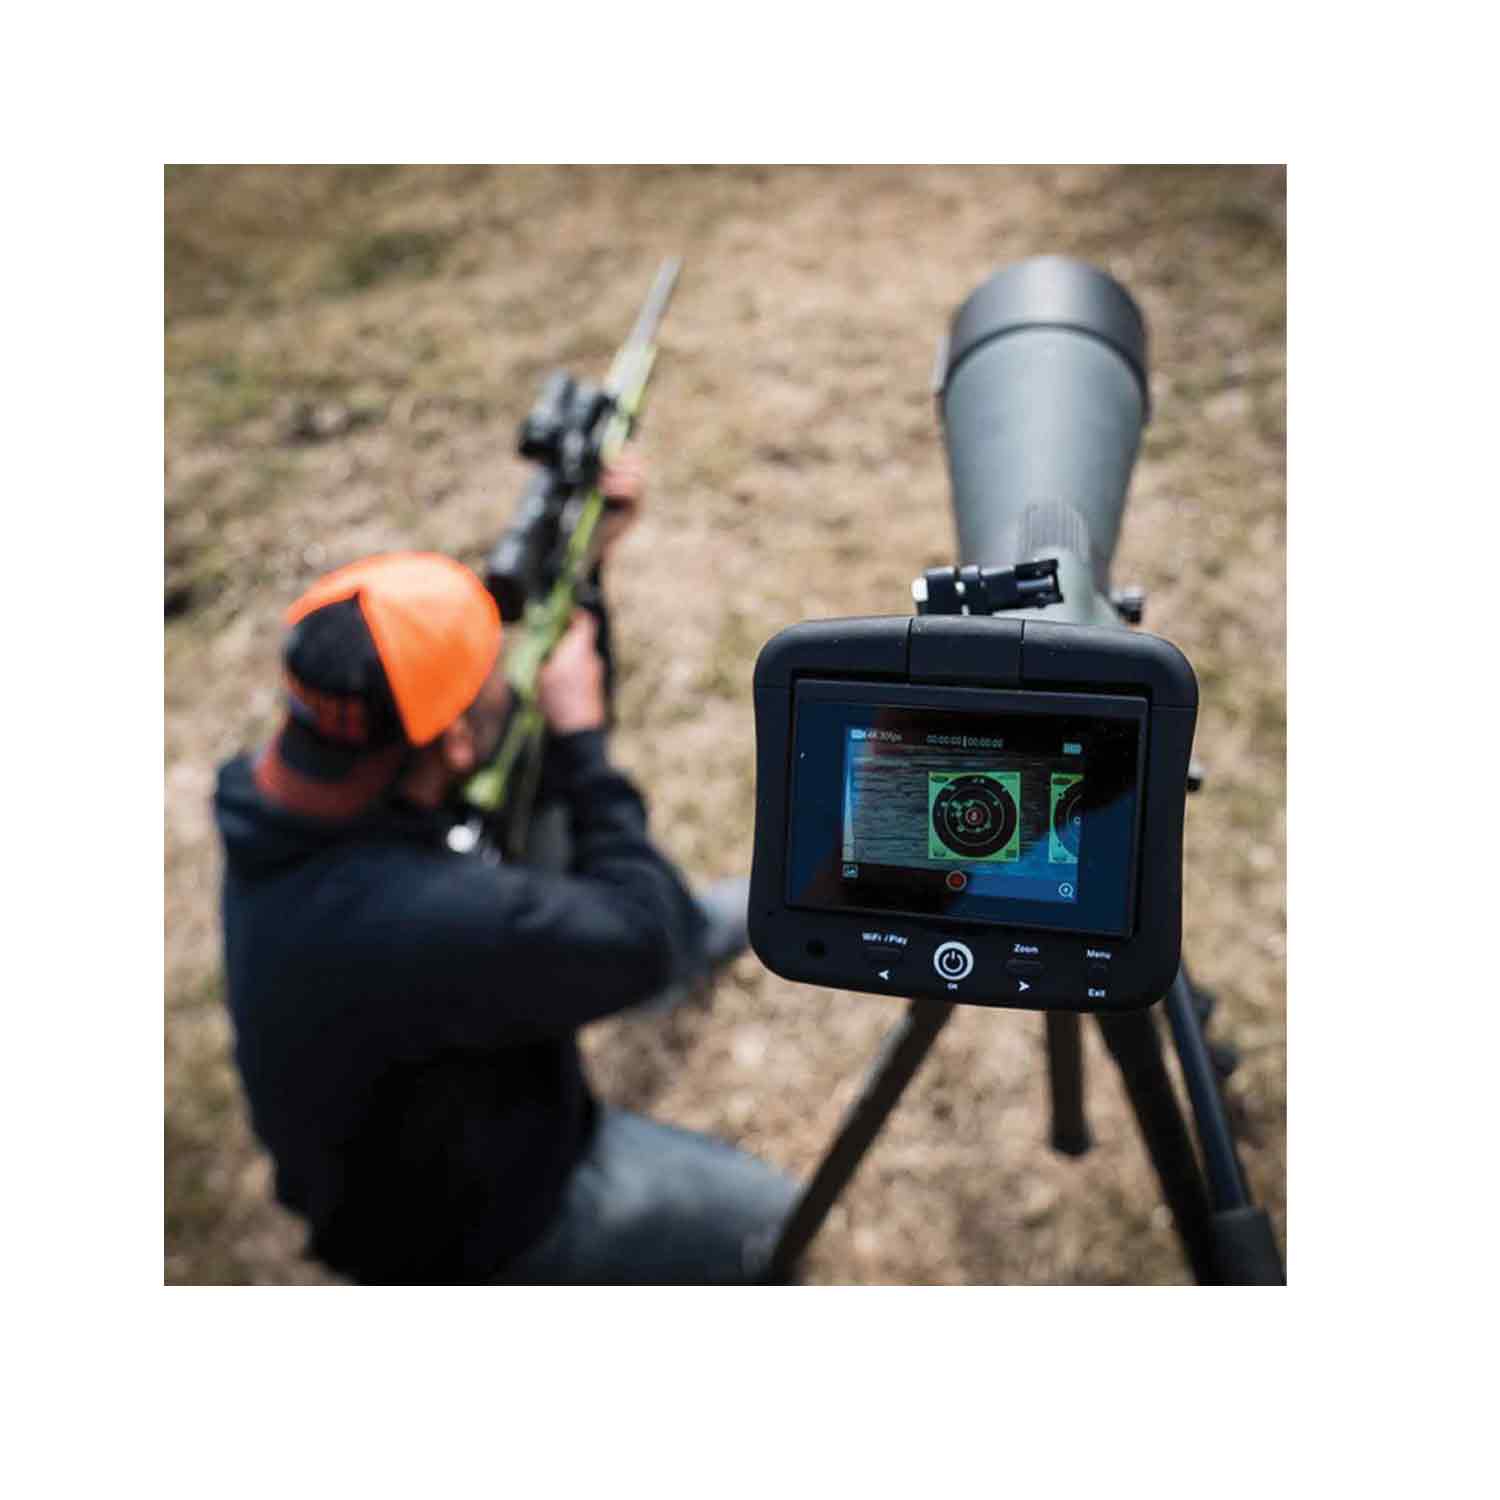 Tactacam Spotter LR Camera